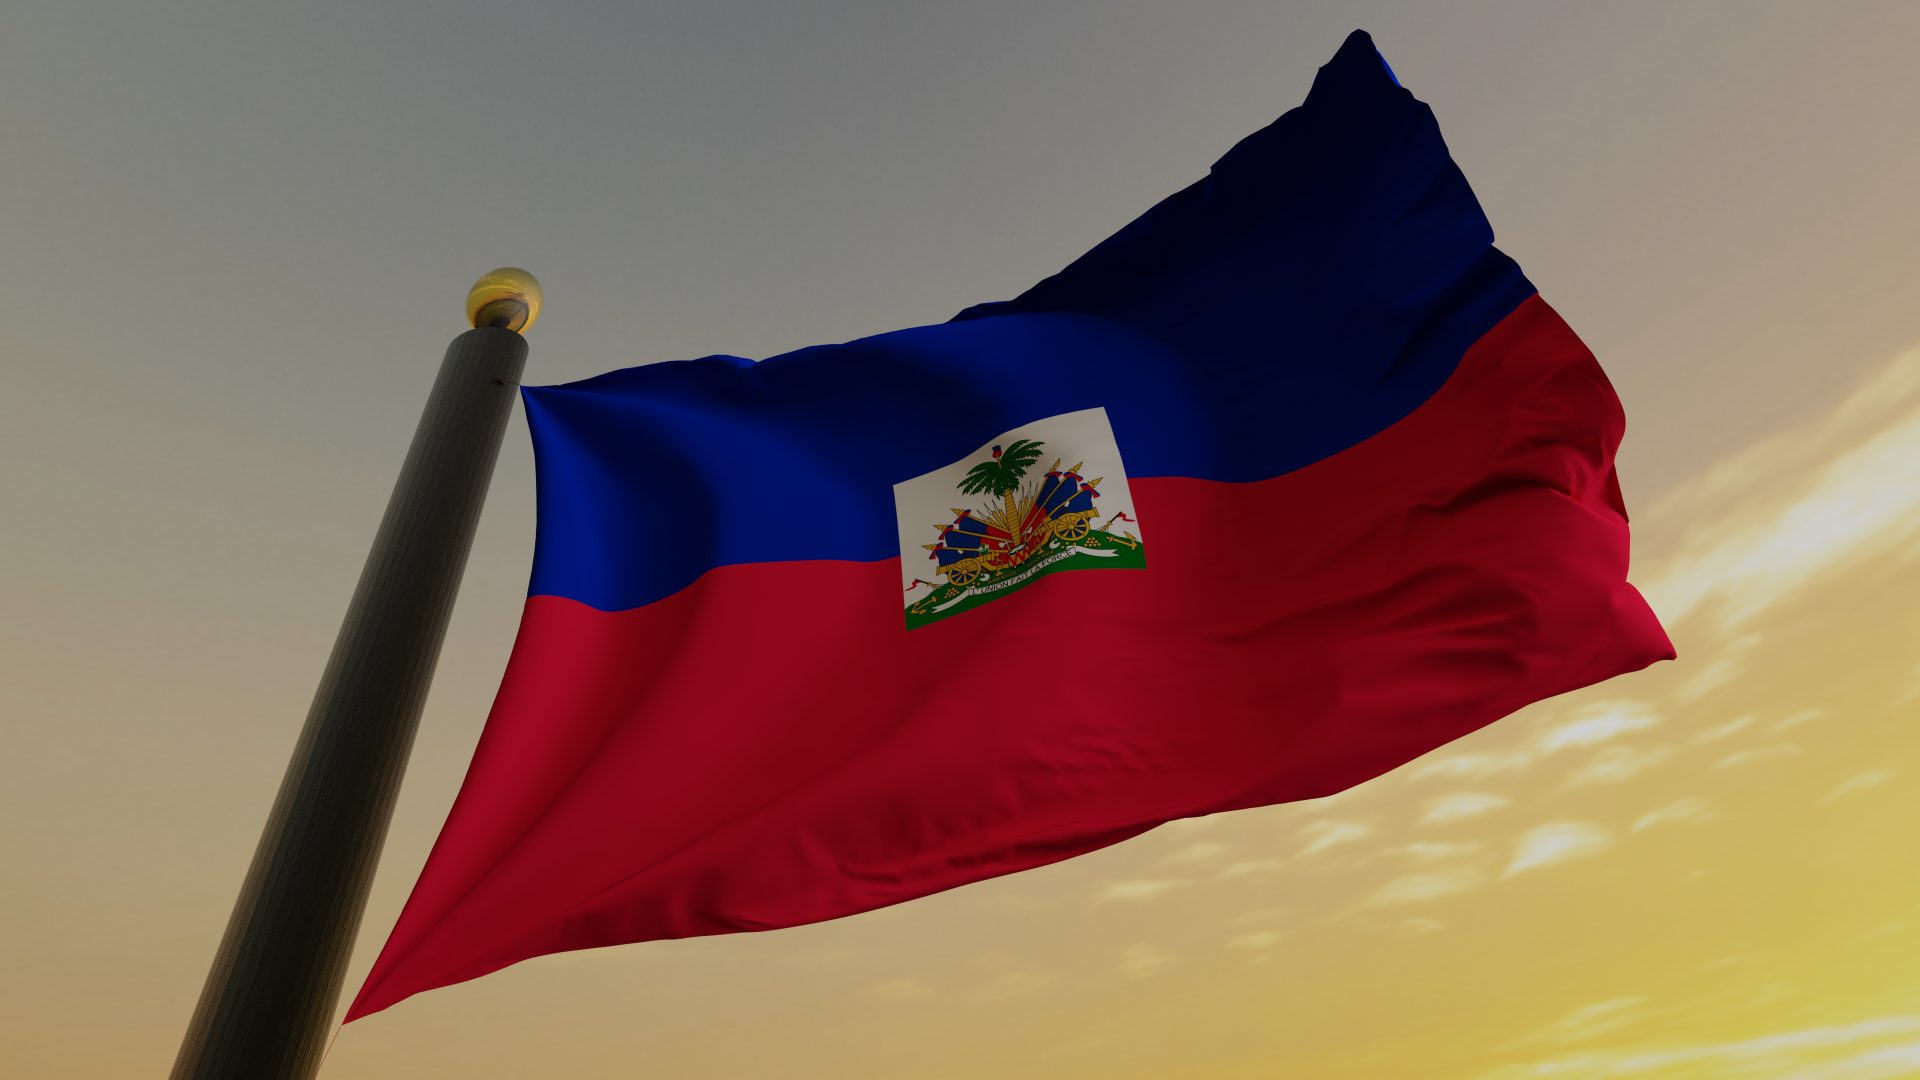 Haitian Gangs Free 4,000 Inmates in Massive Jailbreak